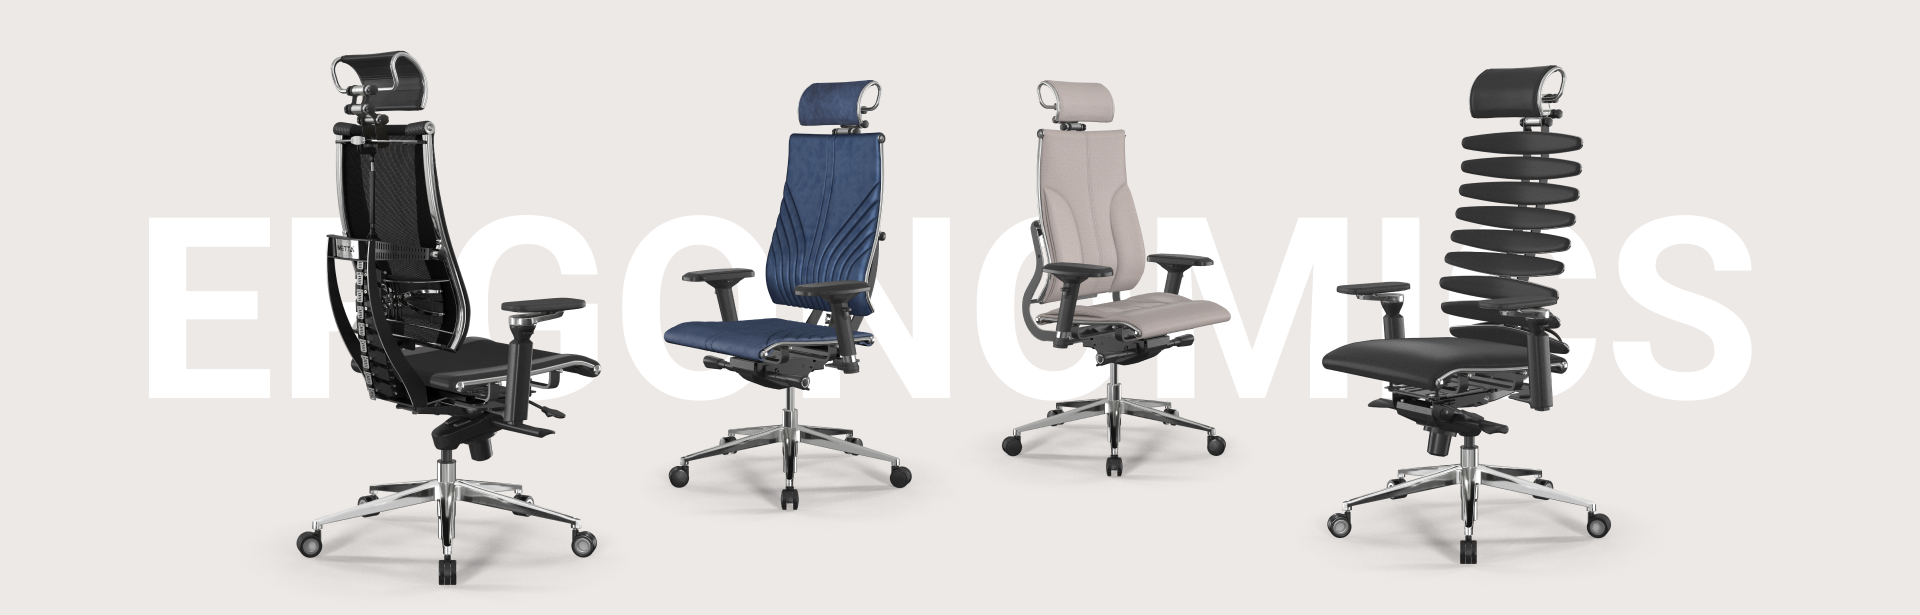 METTA sandalyelerinin ergonomisi